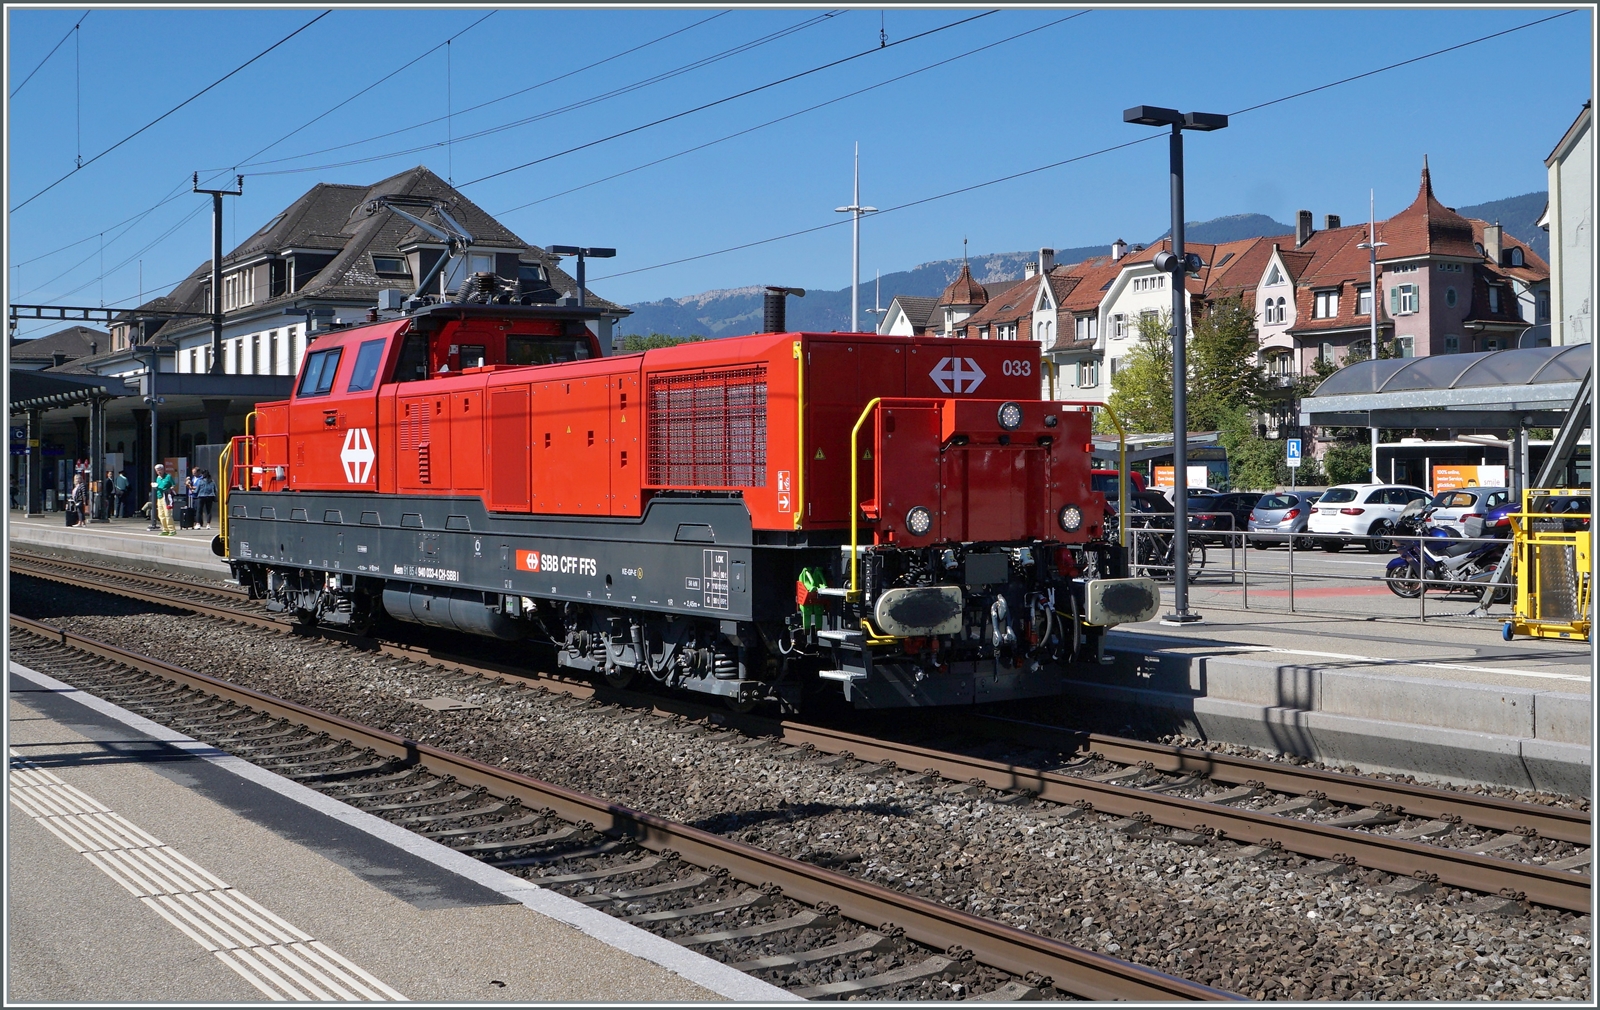 Die Aem 940 033 bei der Druchfahrt in Solothurn. 

12. Sept. 2022